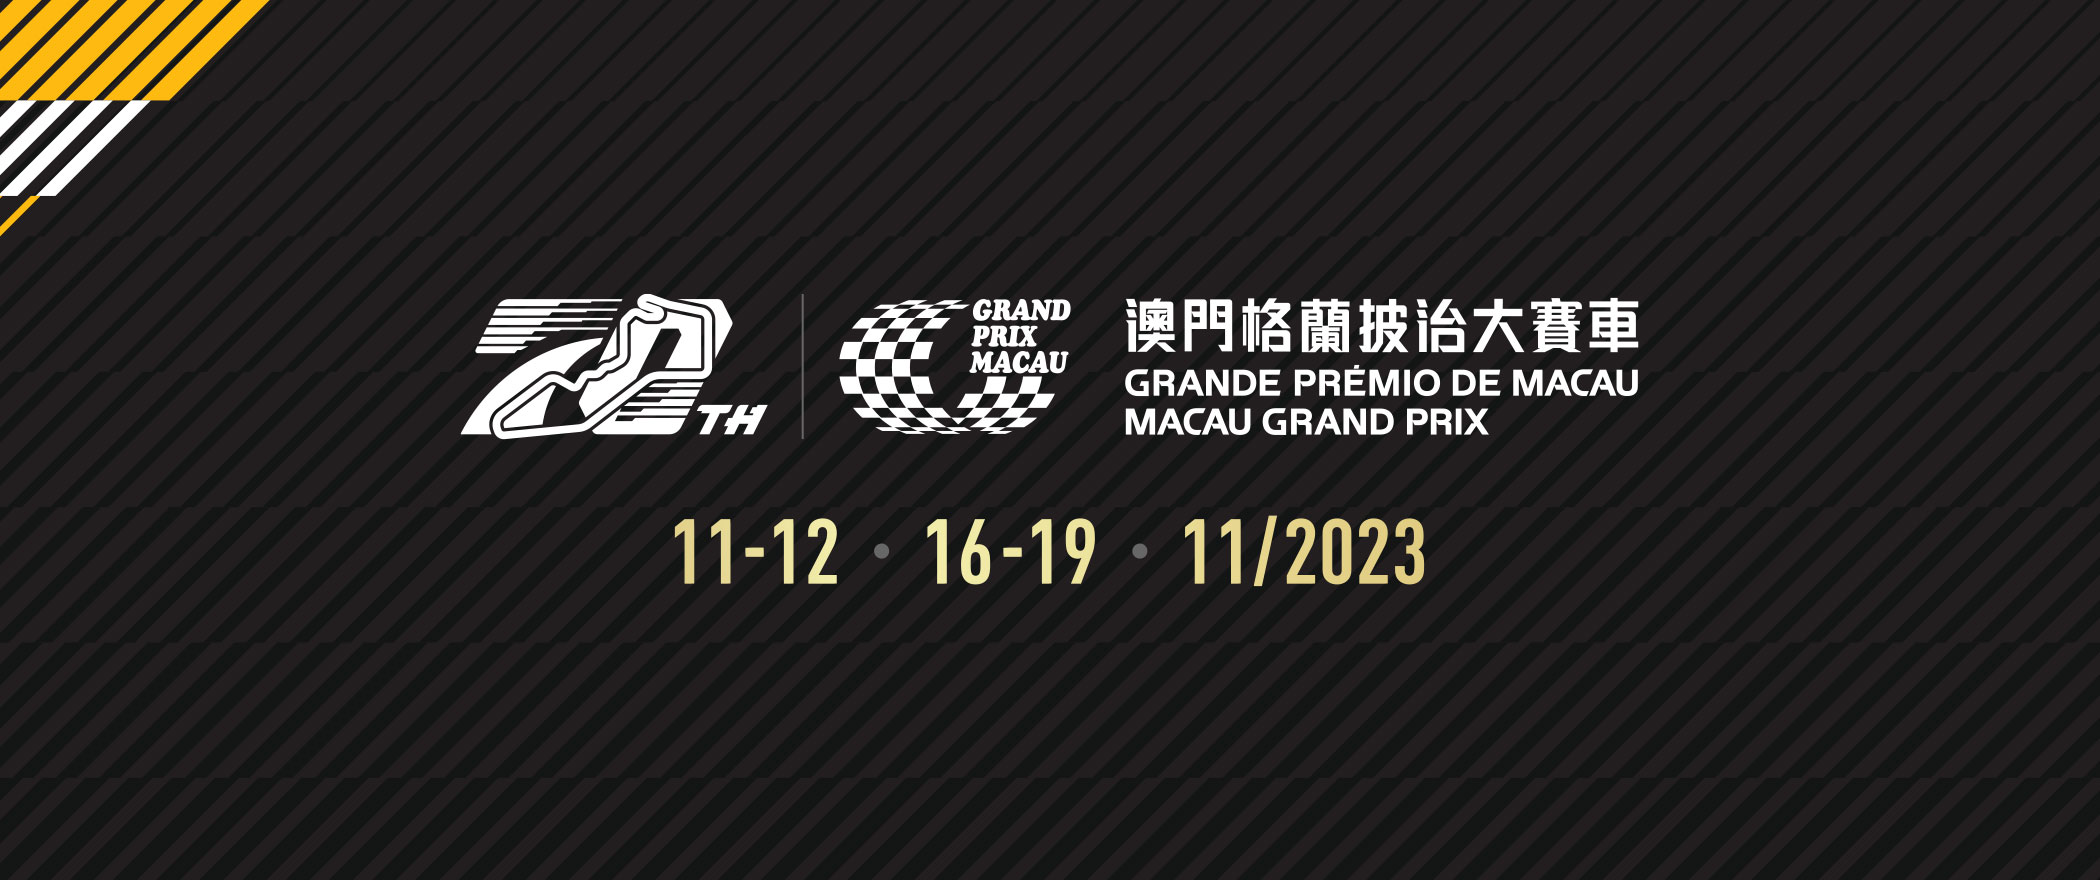 Home Macau Grand Prix